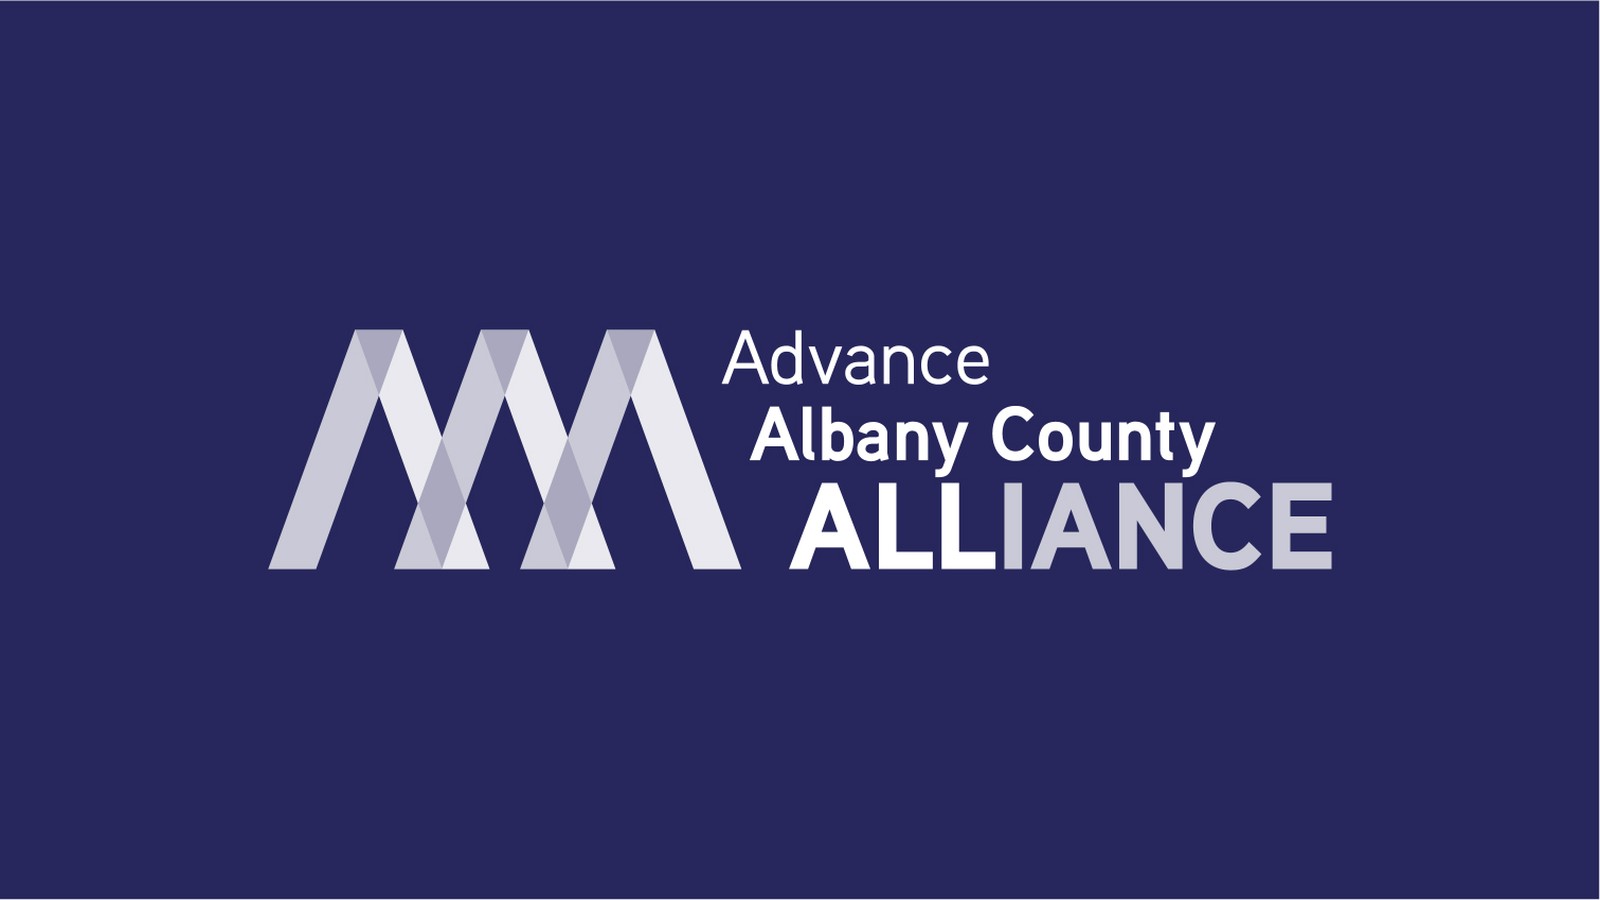 Advance Albany County Alliance | Advance Albany County Alliance Knockout Logo